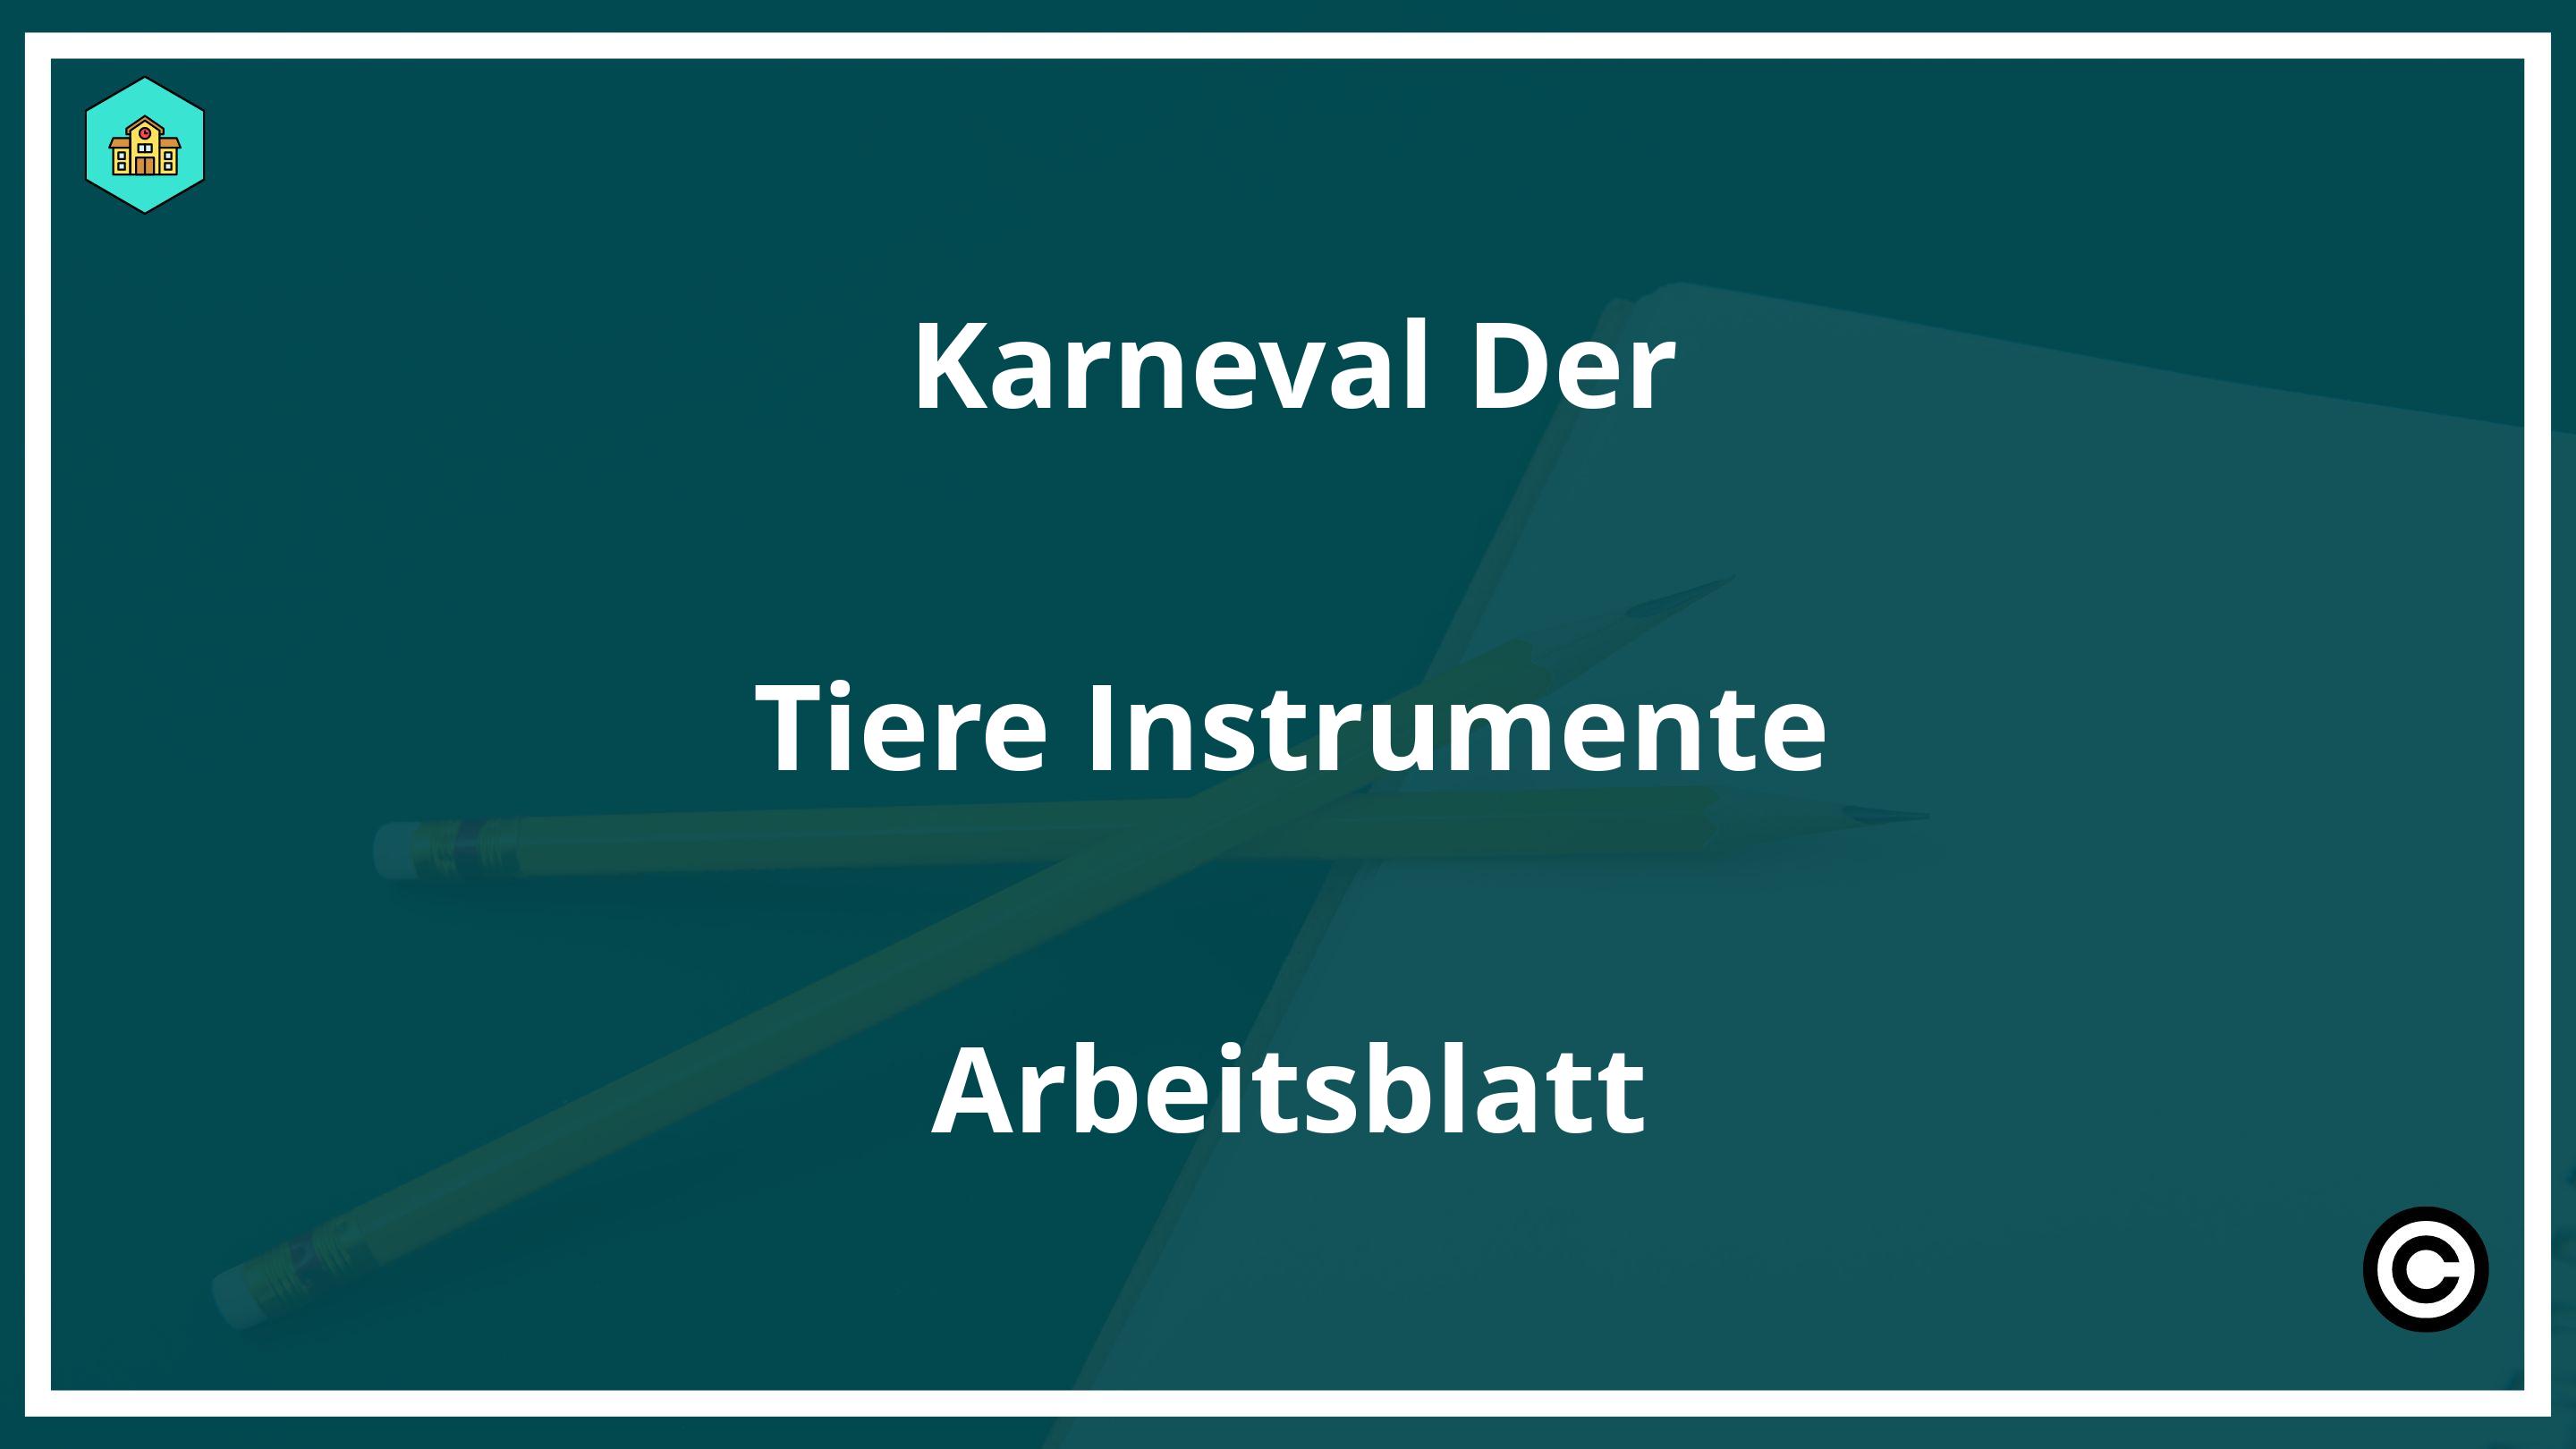 Karneval Der Tiere Instrumente Arbeitsblatt PDF